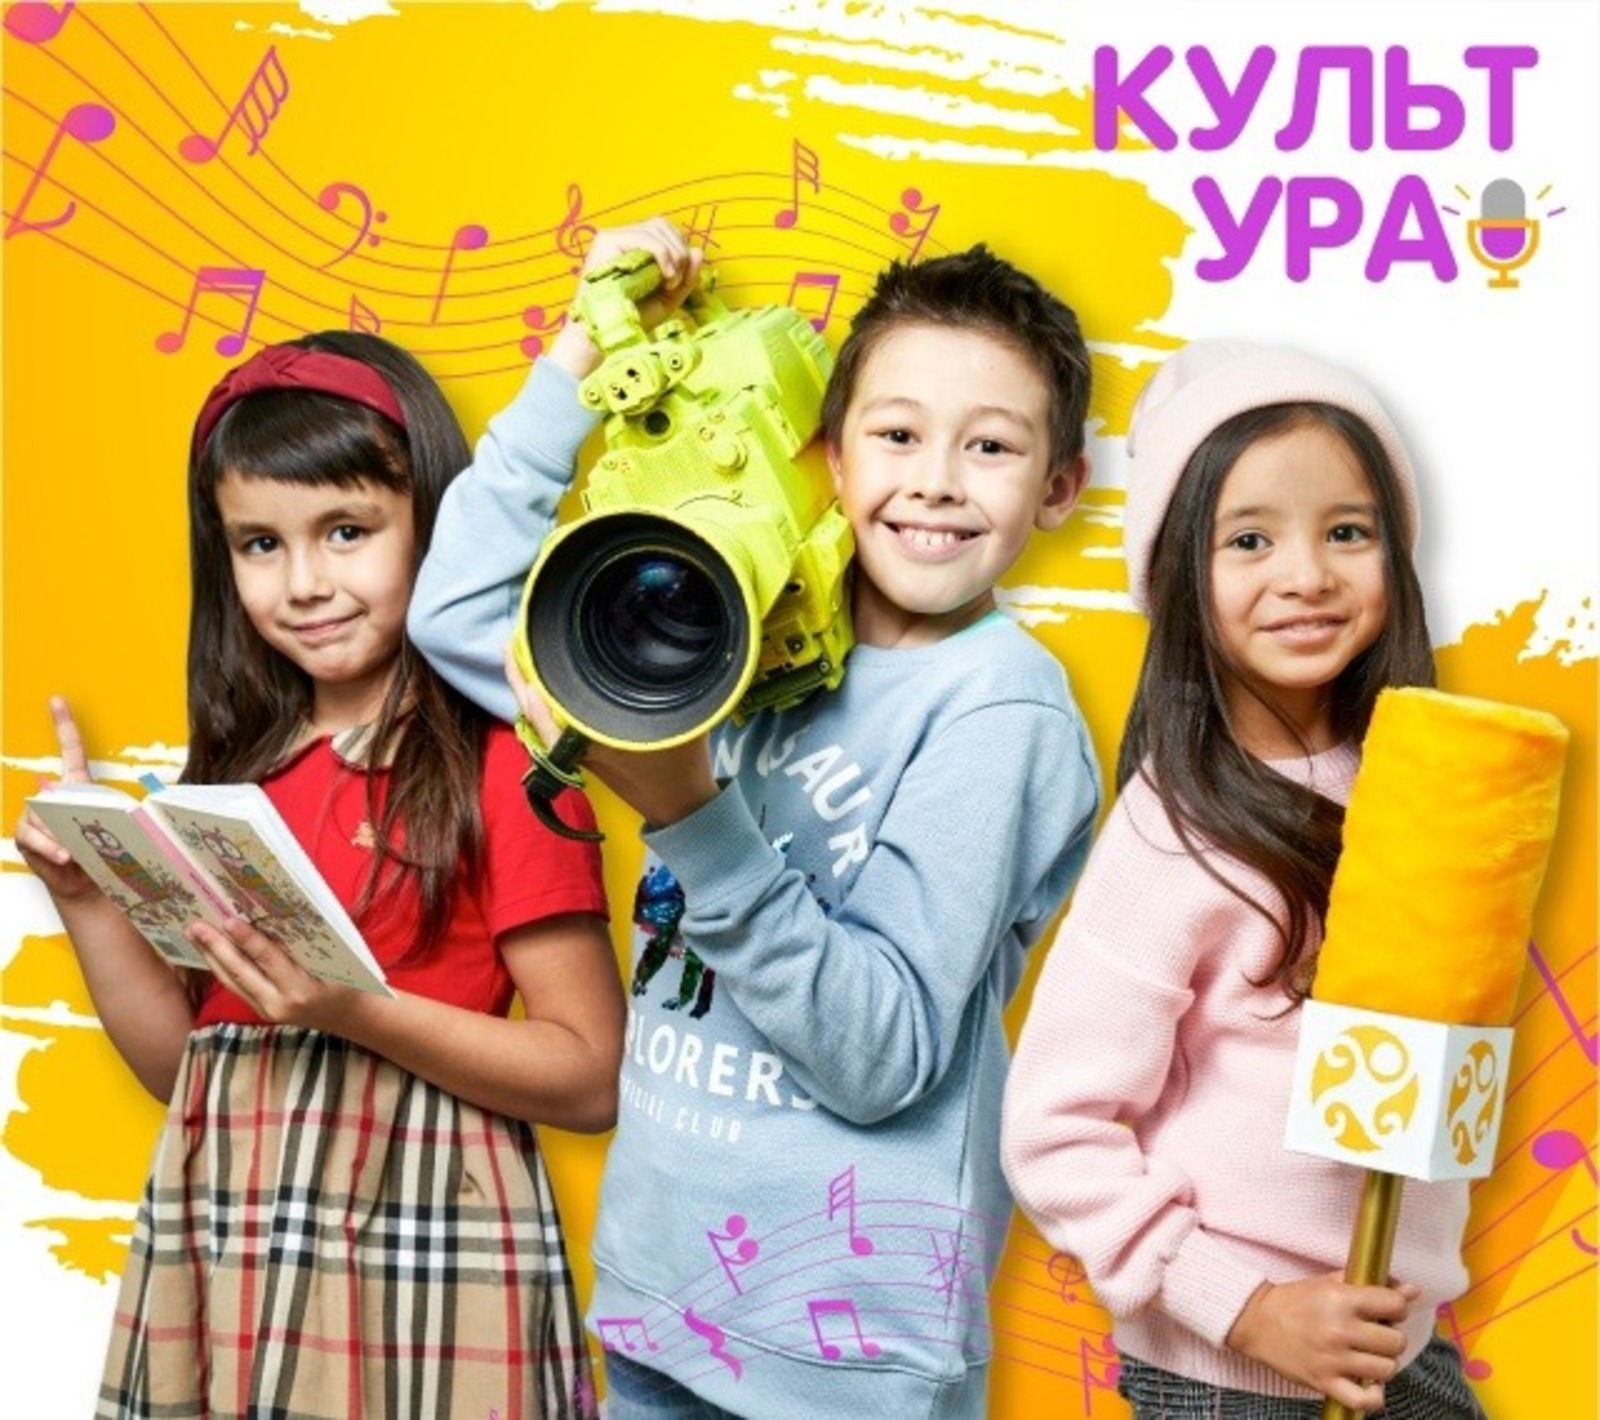 В Уфе состоится Первый фестиваль «КультУРА!»